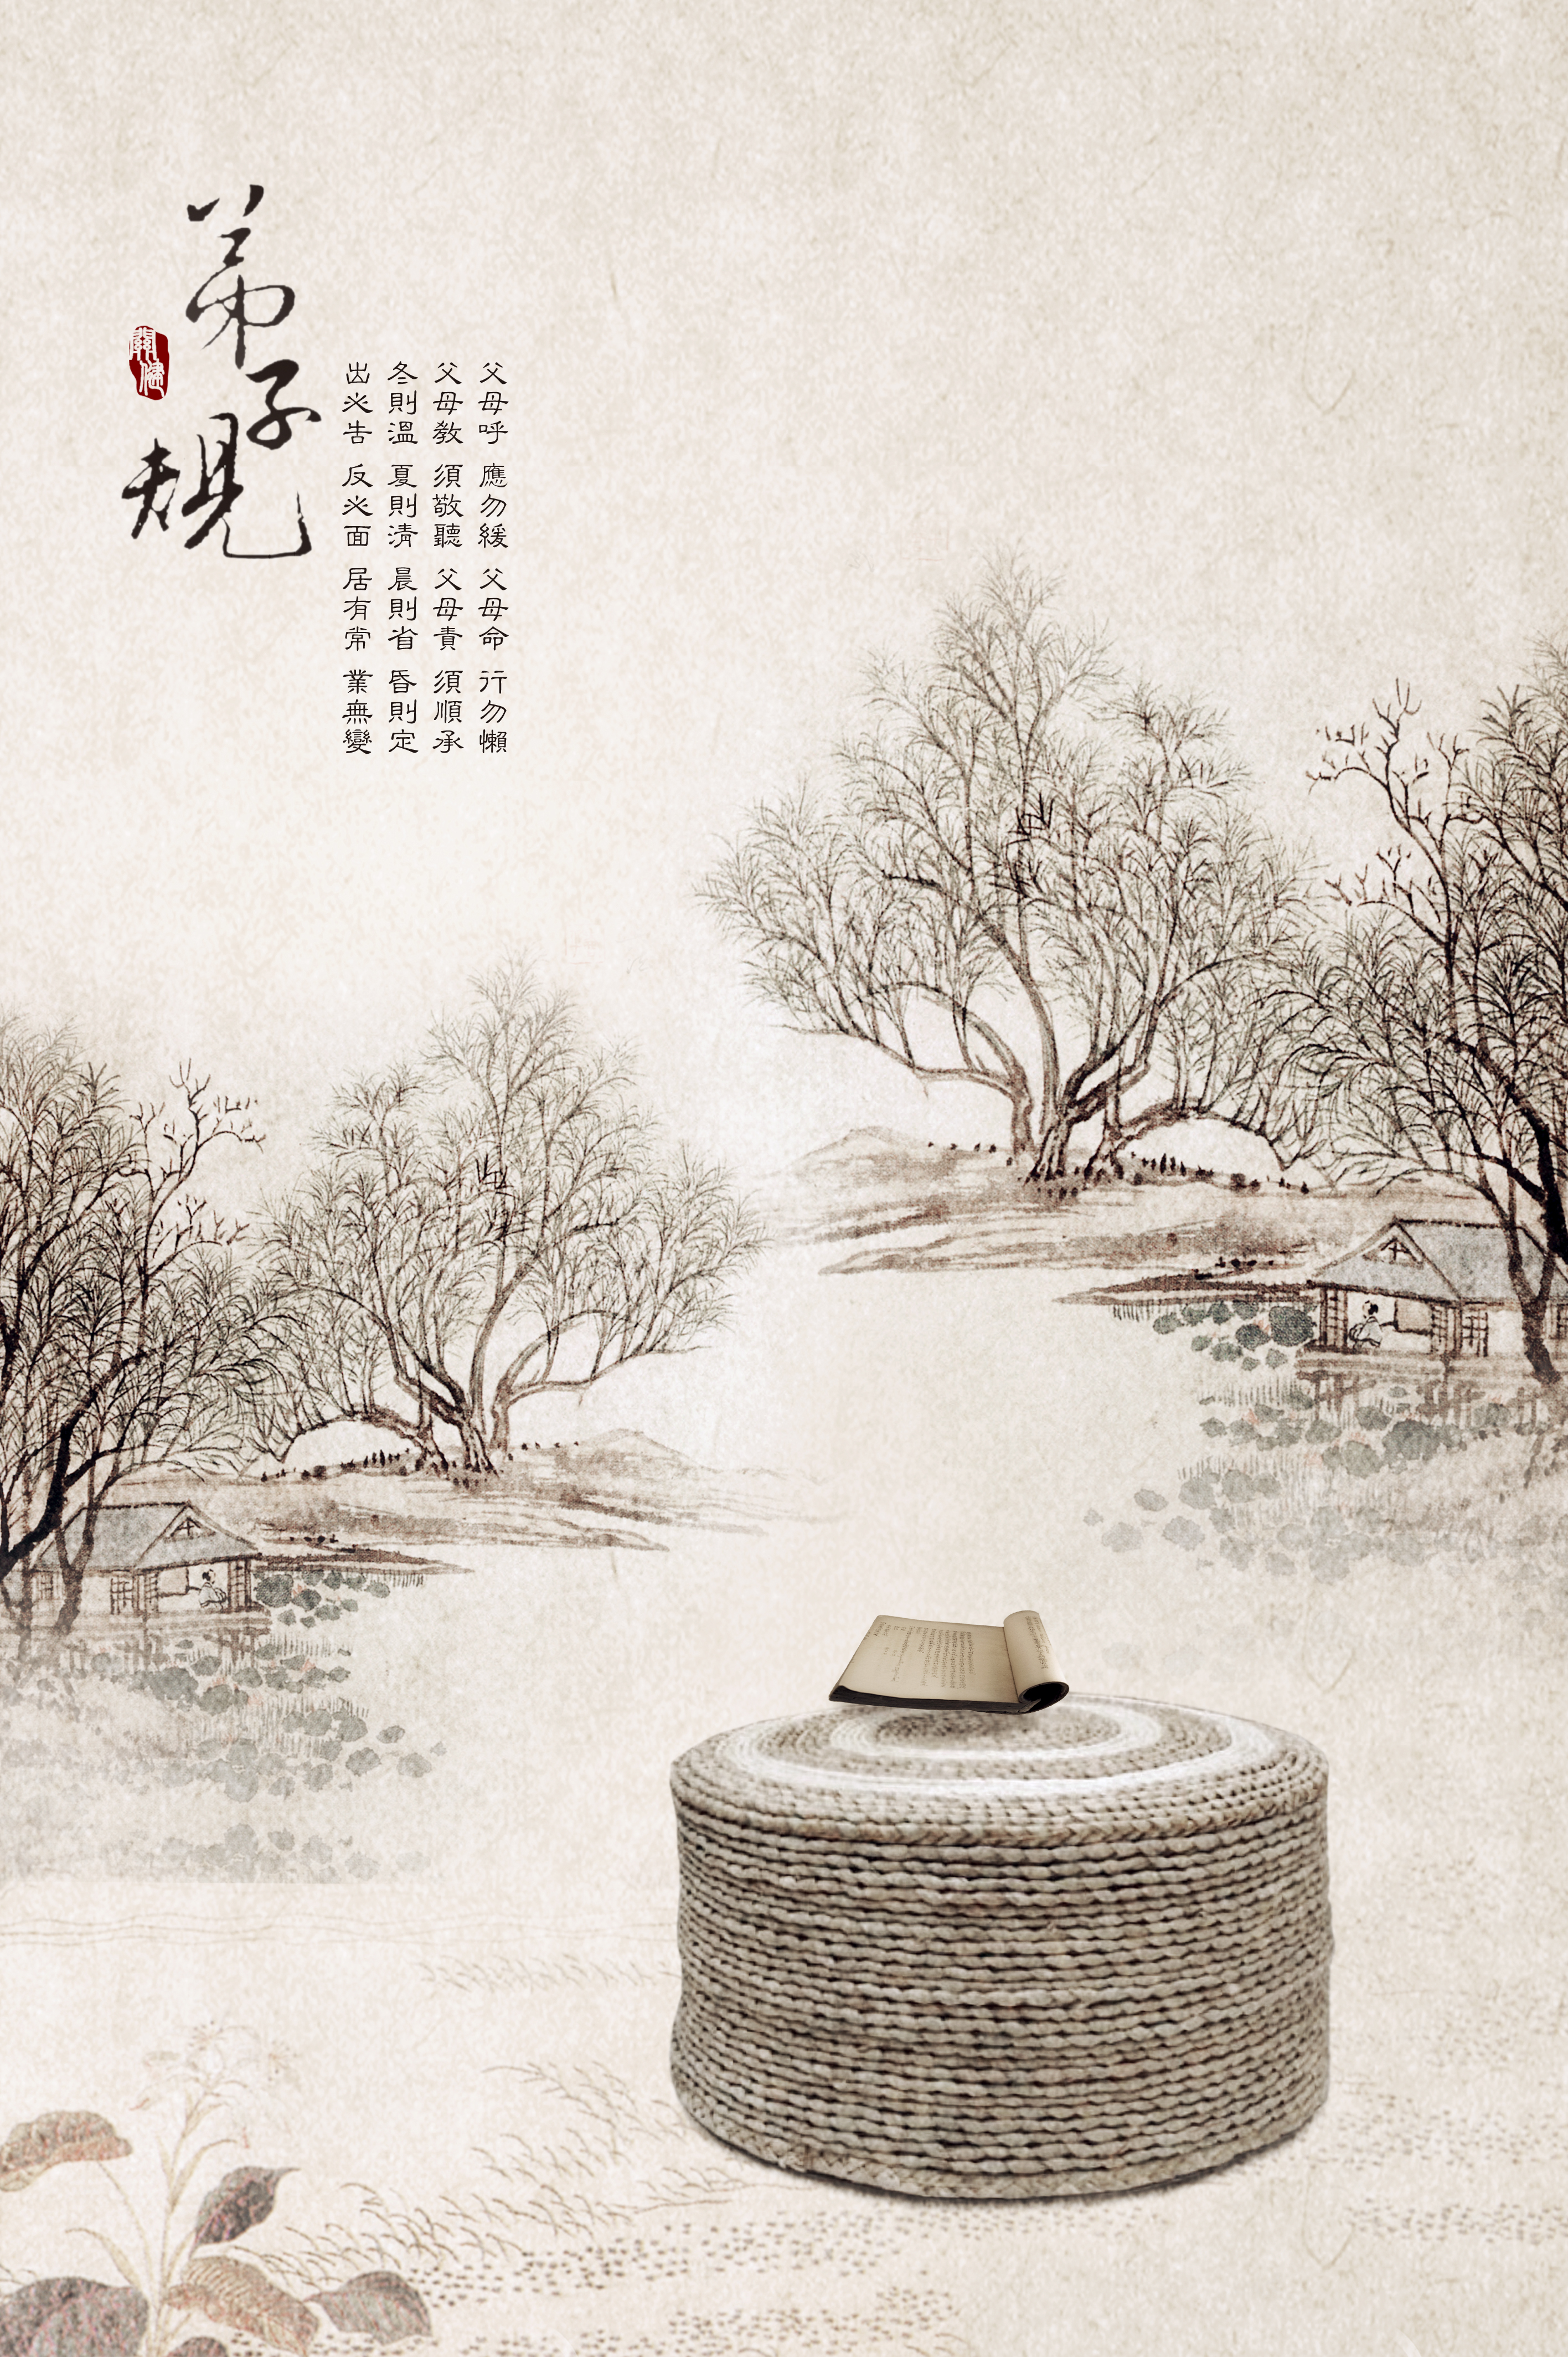 古风中国风工笔画古装写真背景纱影楼摄影素材